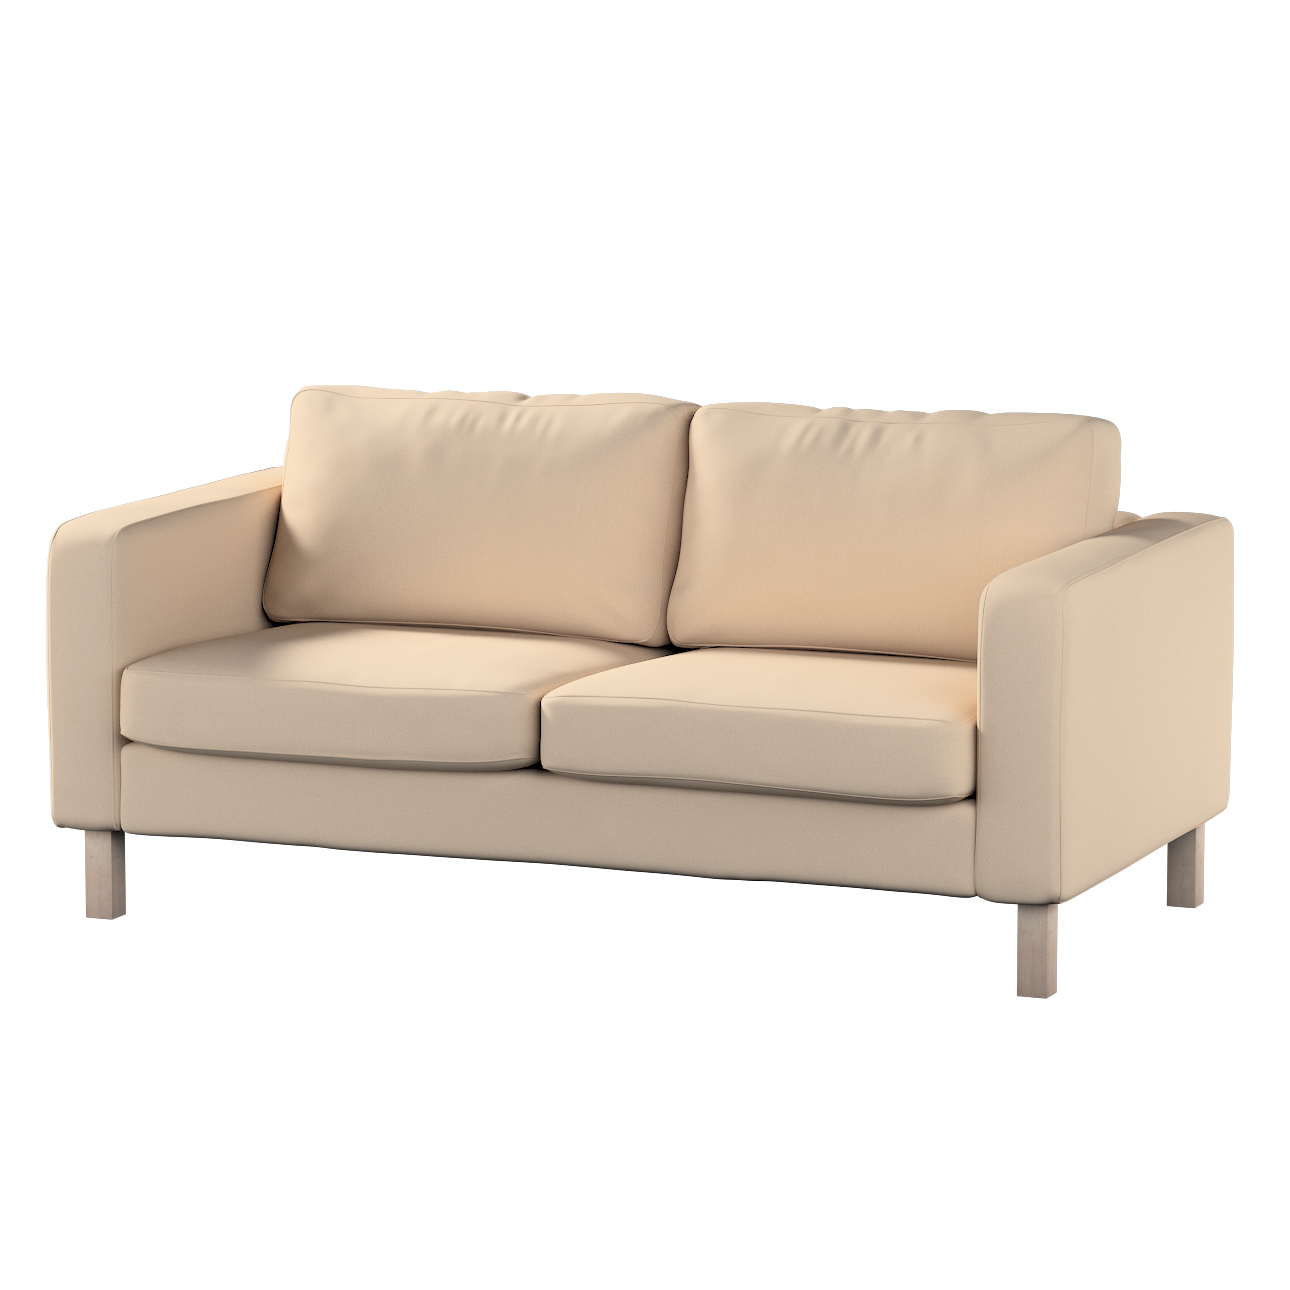 Bezug für Karlstad 2-Sitzer Sofa nicht ausklappbar, creme-beige, Sofahusse, günstig online kaufen